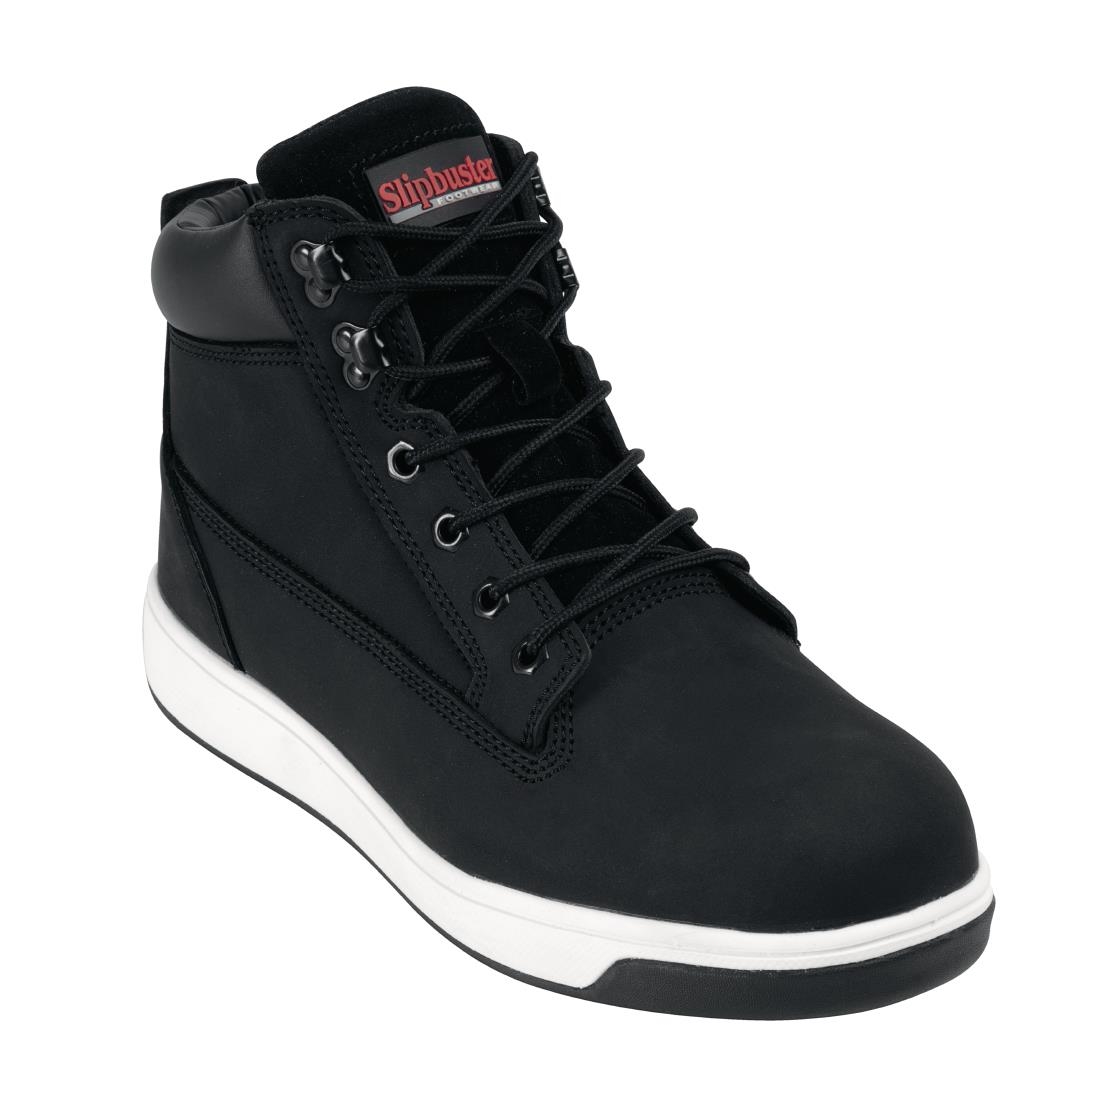 Slipbuster Sneaker Boots Black 37